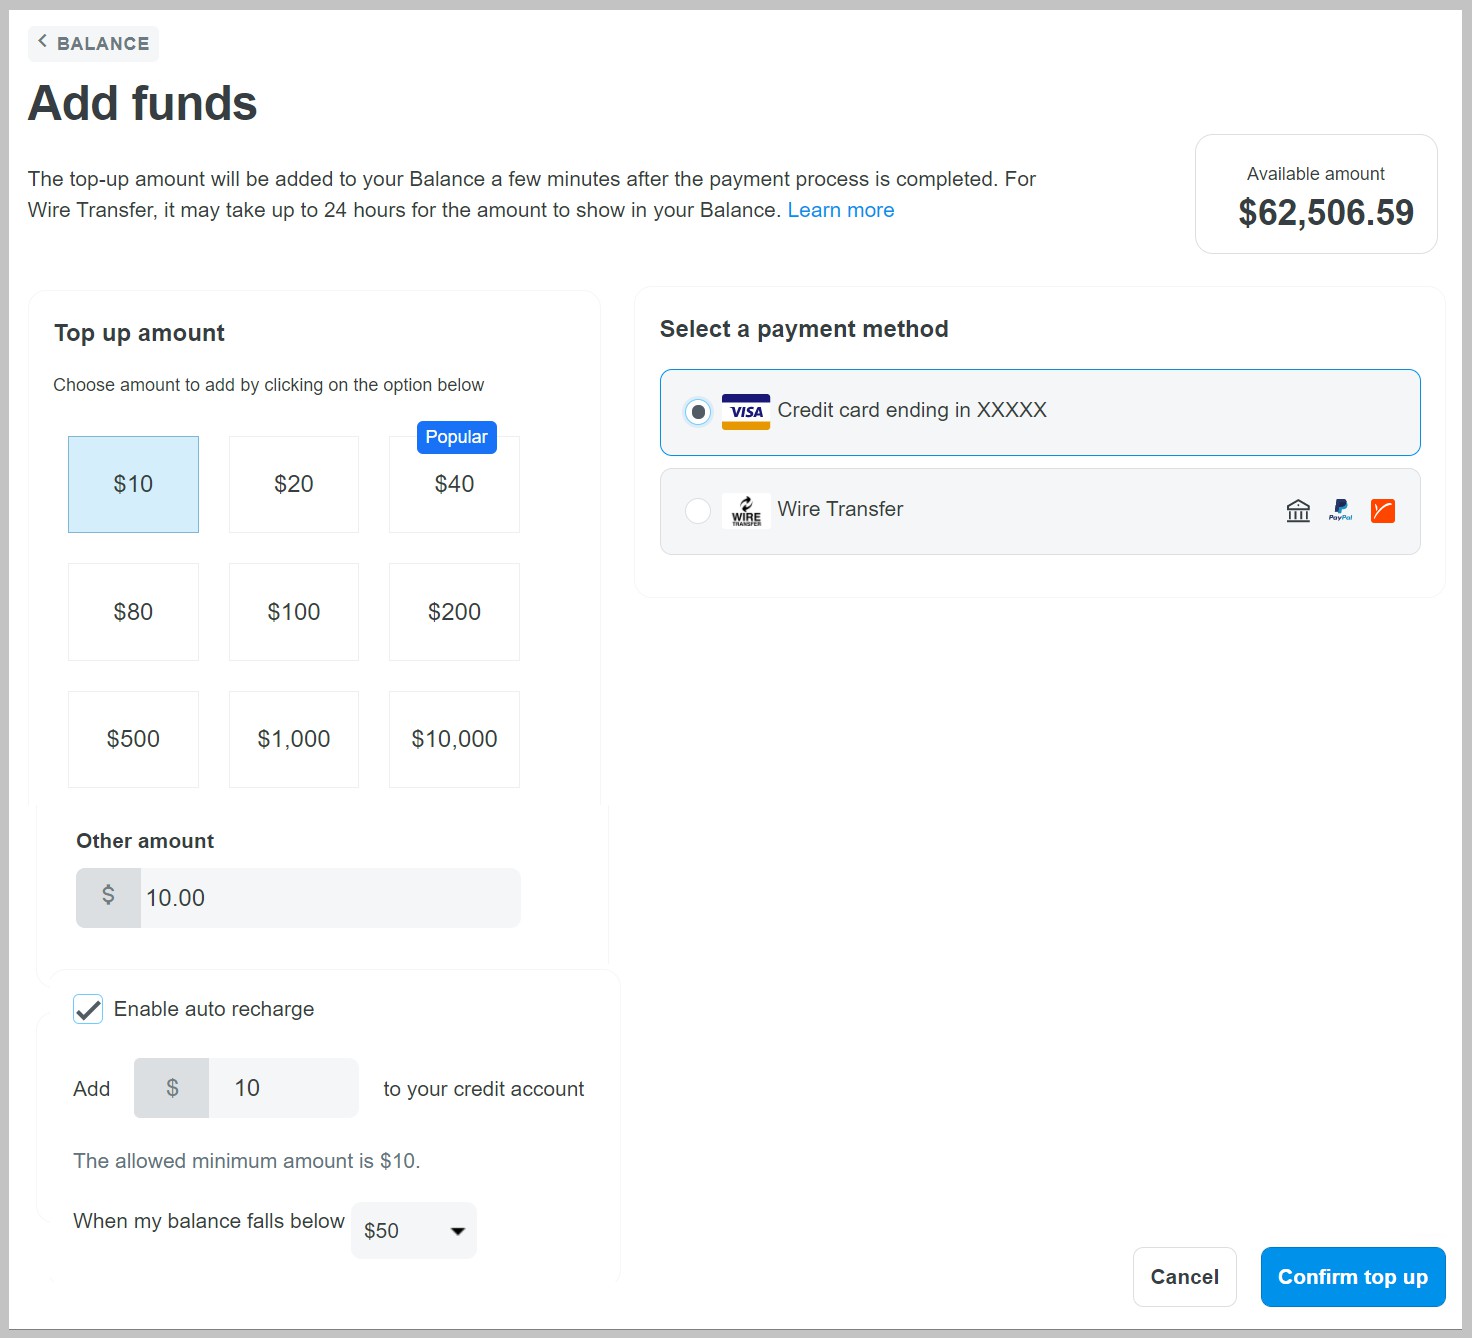 Giao diện làm việc của trang Add funds để bạn tiến hành nạp tiền.